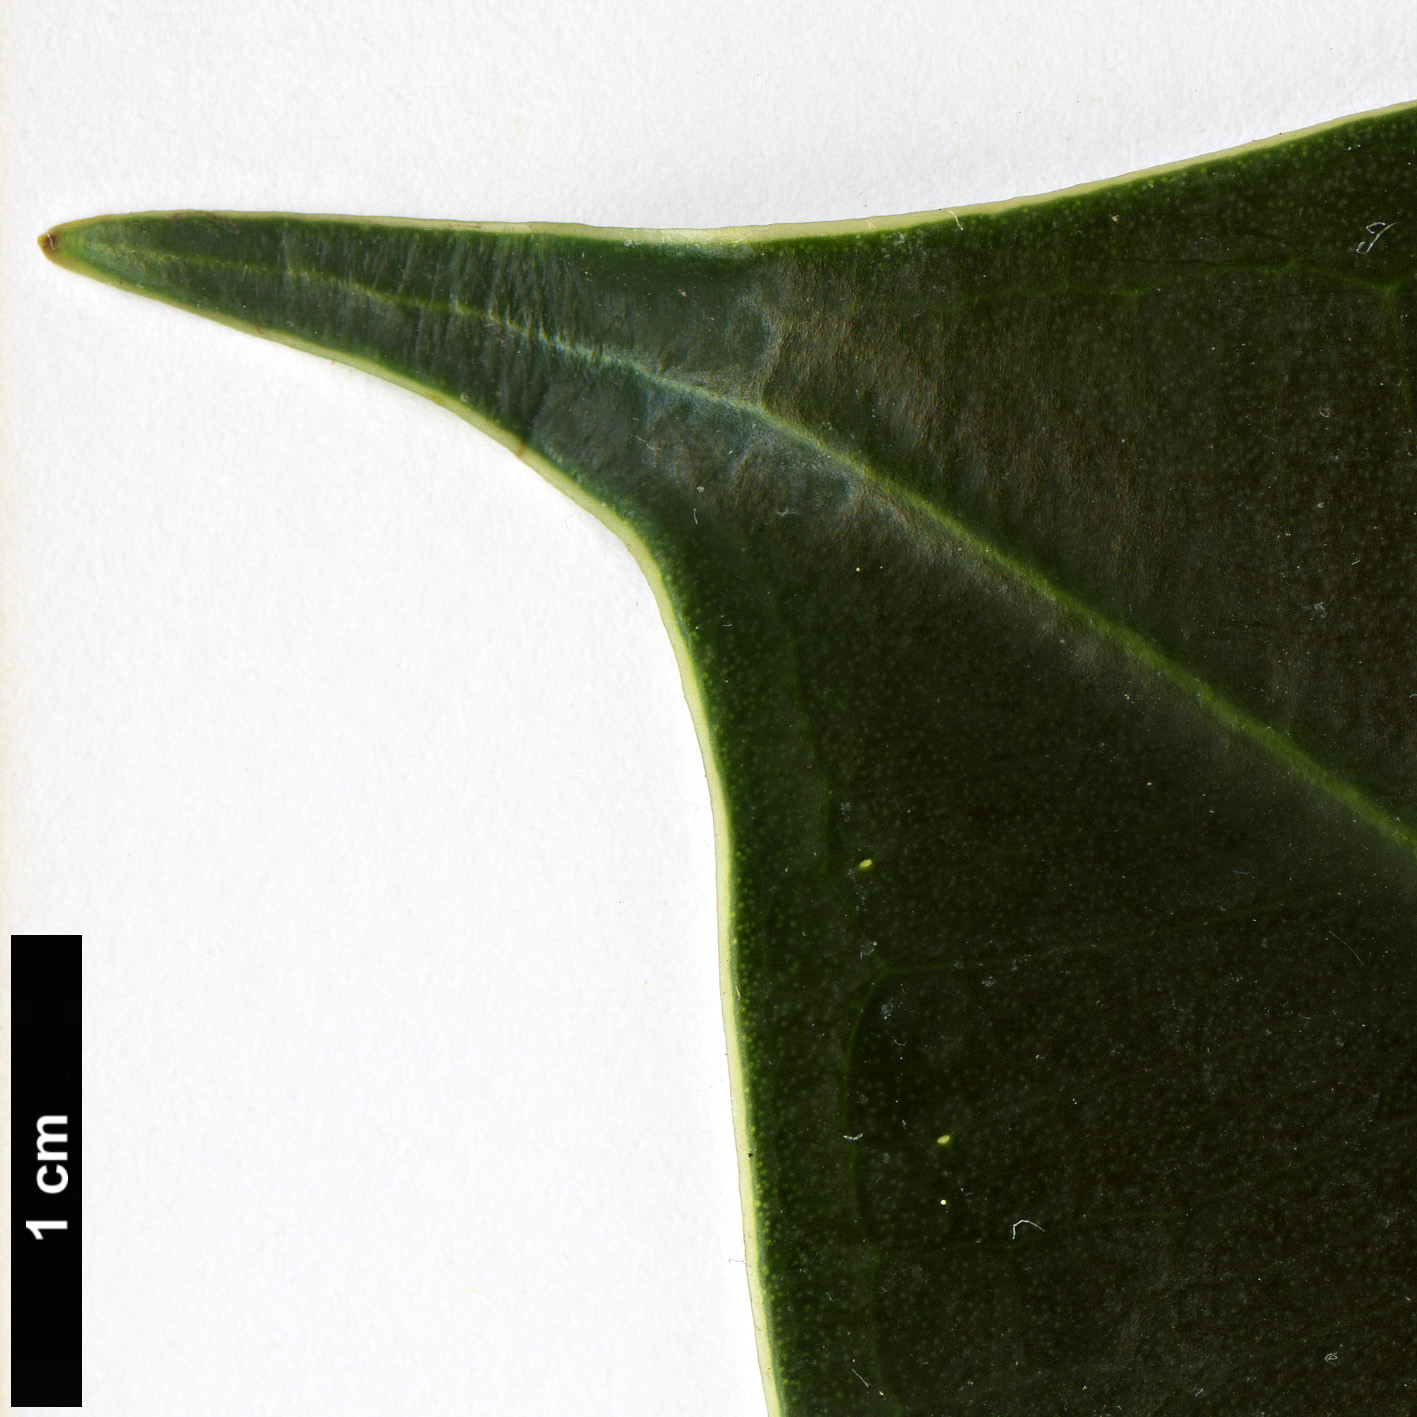 High resolution image: Family: Moraceae - Genus: Ficus - Taxon: elastica